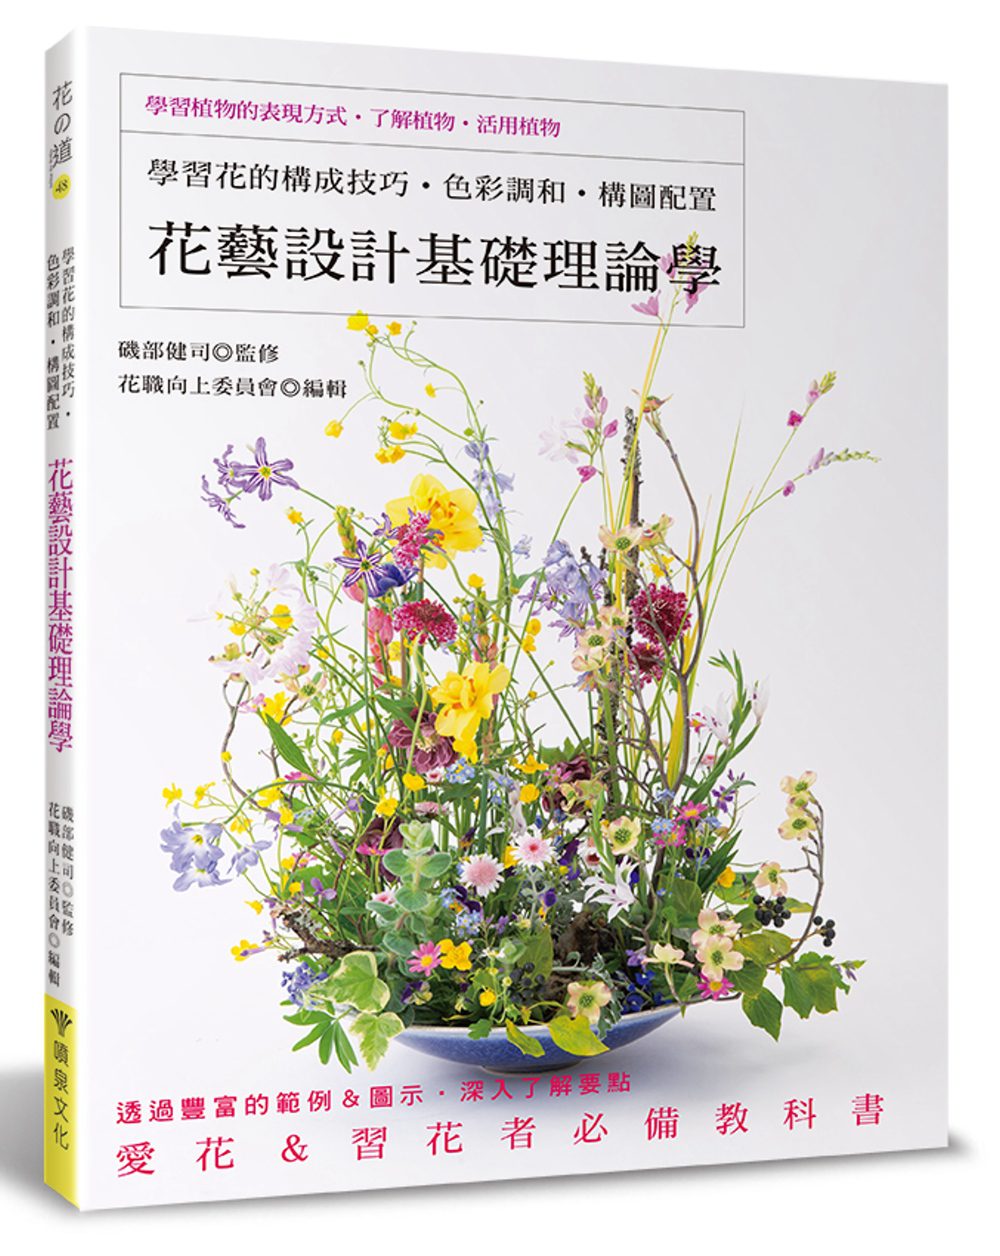 花藝設計基礎理論學：學習花的構成技巧•色彩調和•構圖配置